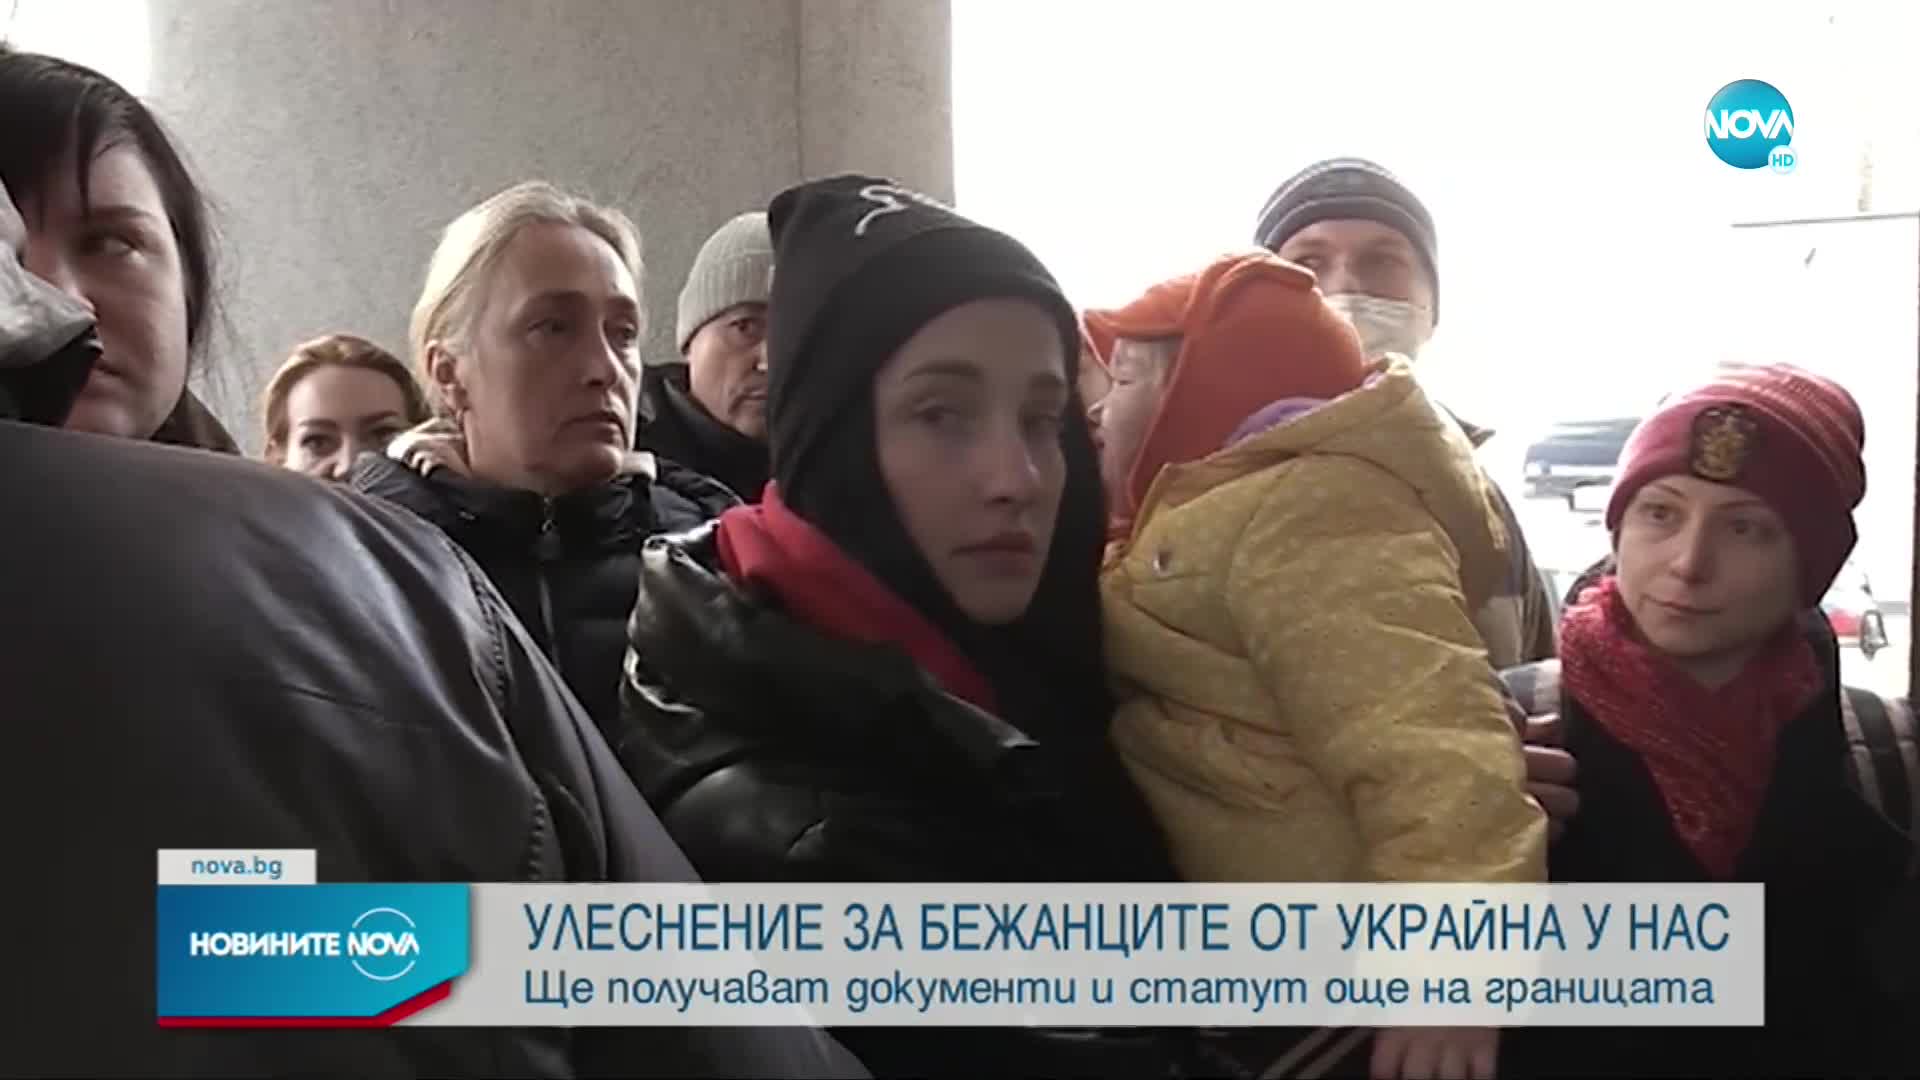 ОТ ДНЕС: Бежанците от Украйна ще получават документ още на границата